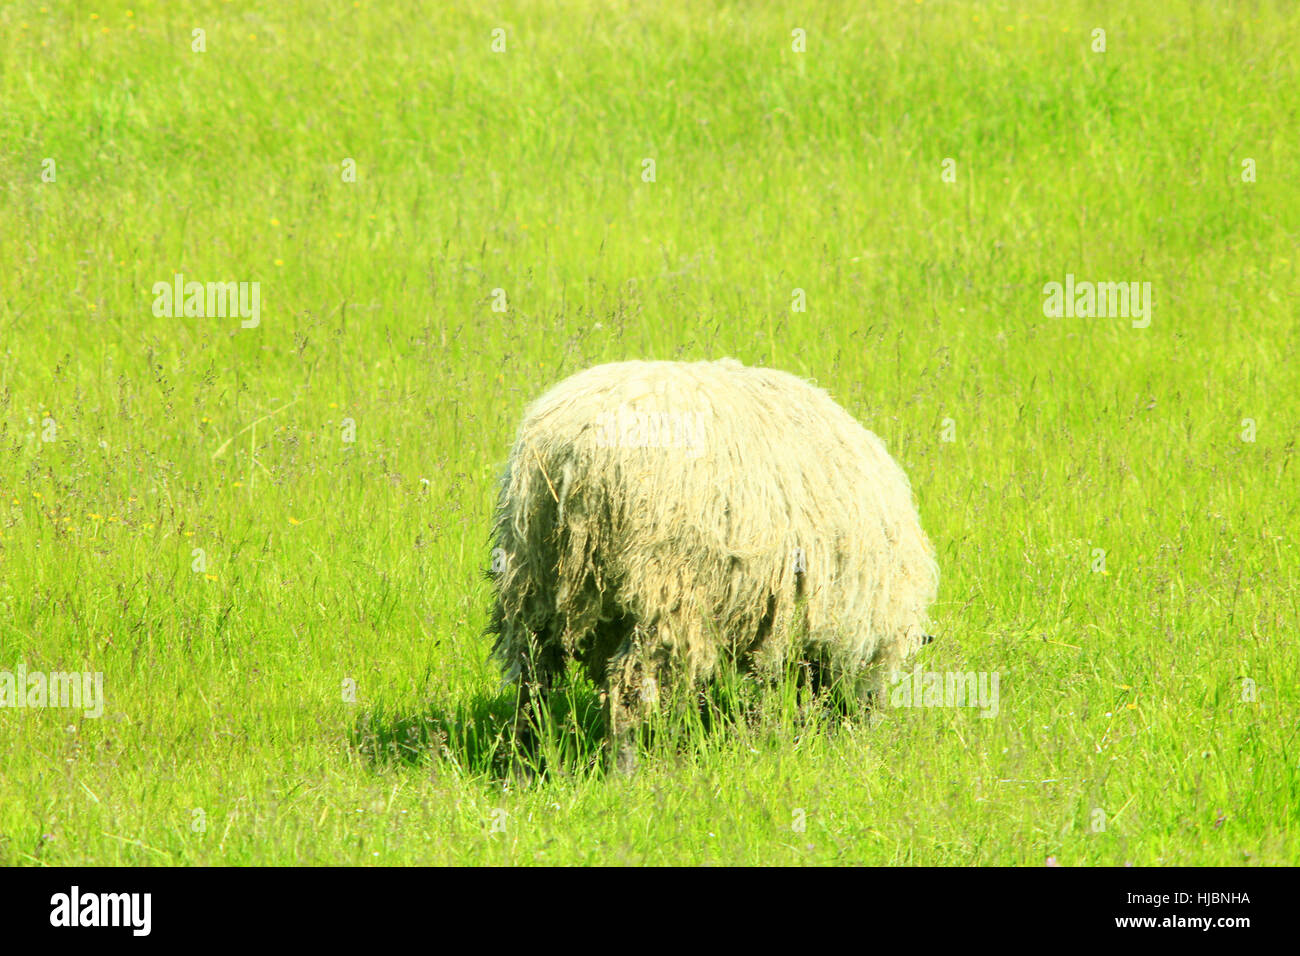 Pecora con vello denso sfiora sul verde erba di pascolo Foto Stock